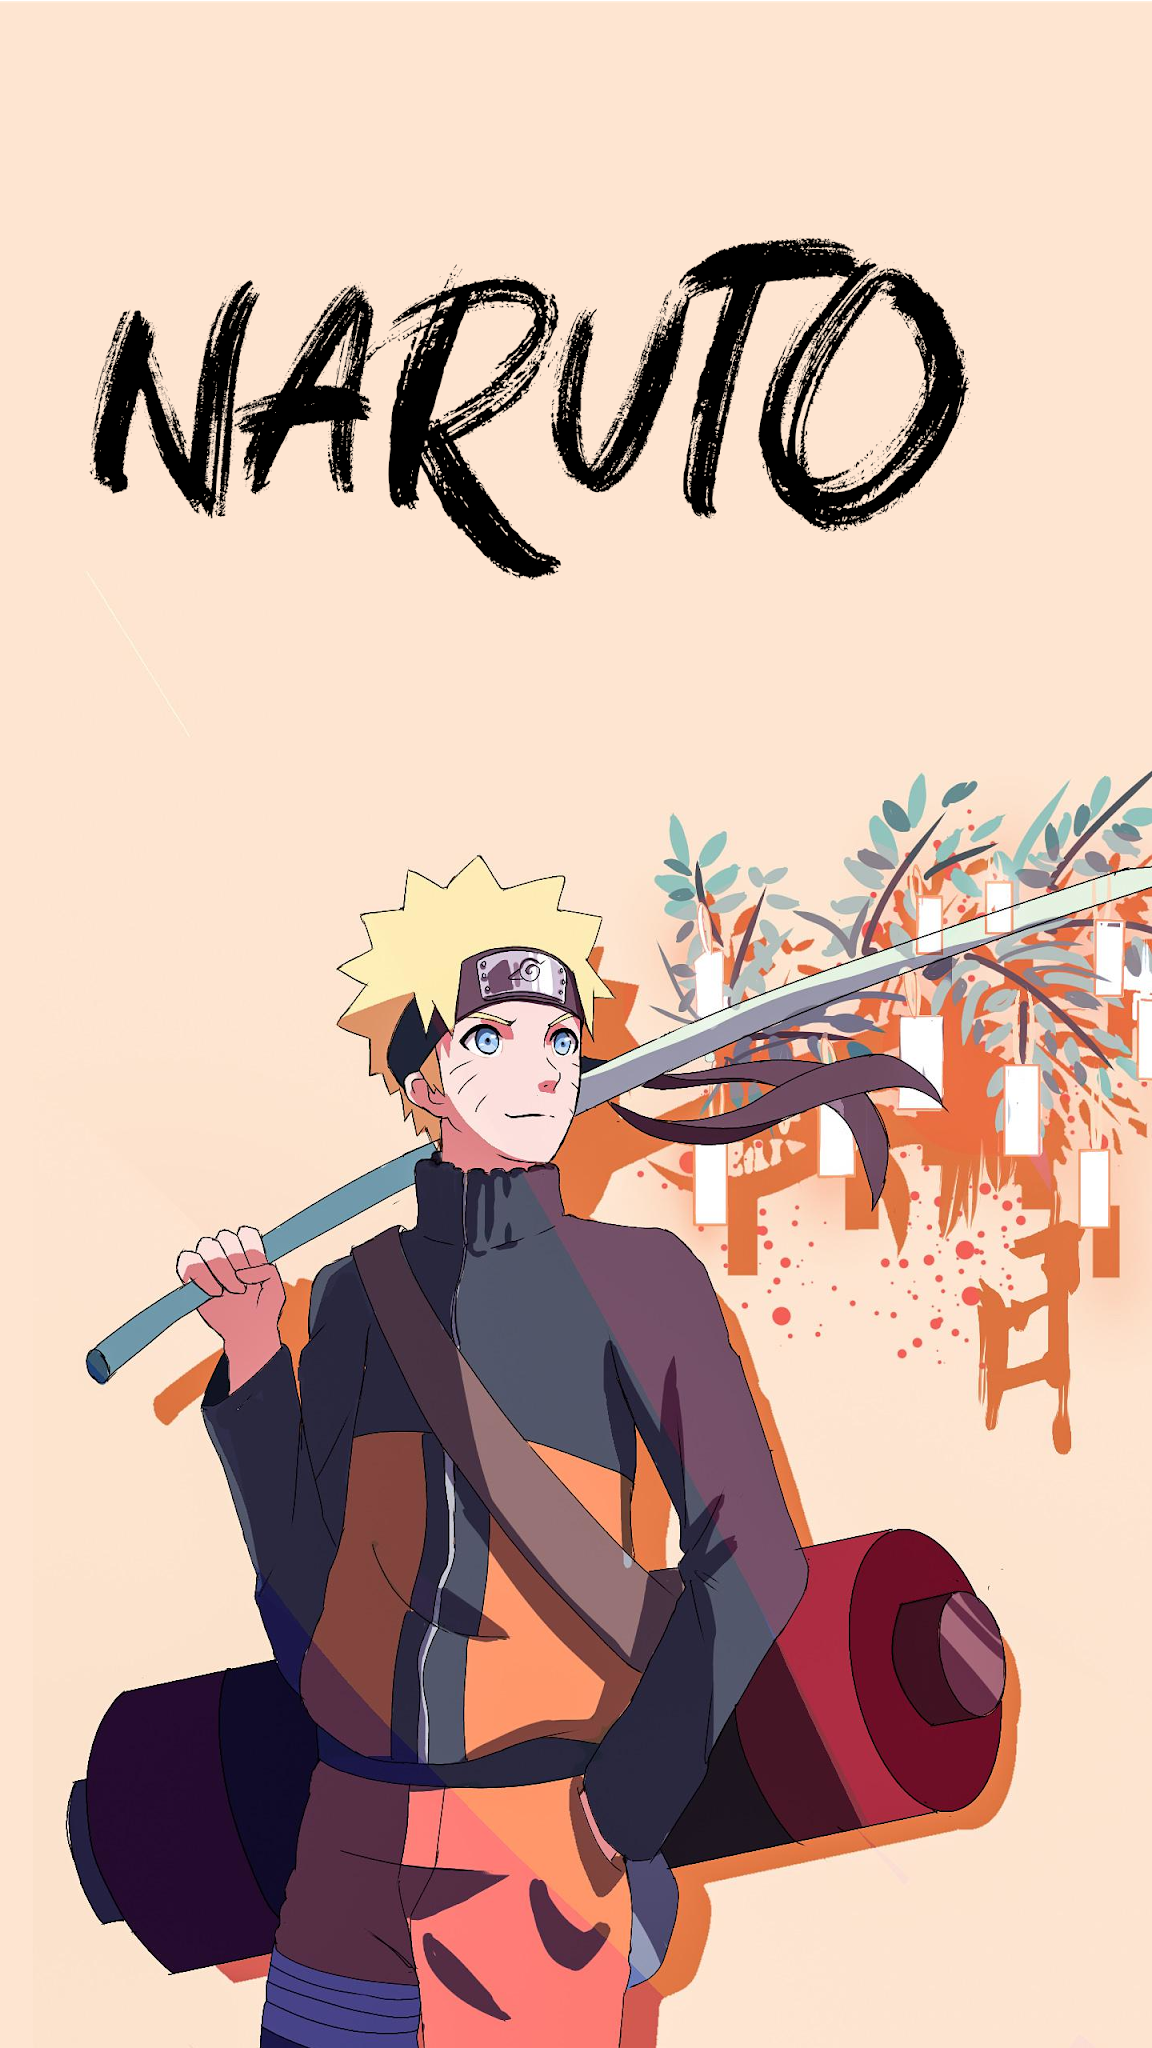 Naruto Uzumaki. Anime Wallpaper. Naruto wallpaper, Anime wallpaper download, Naruto